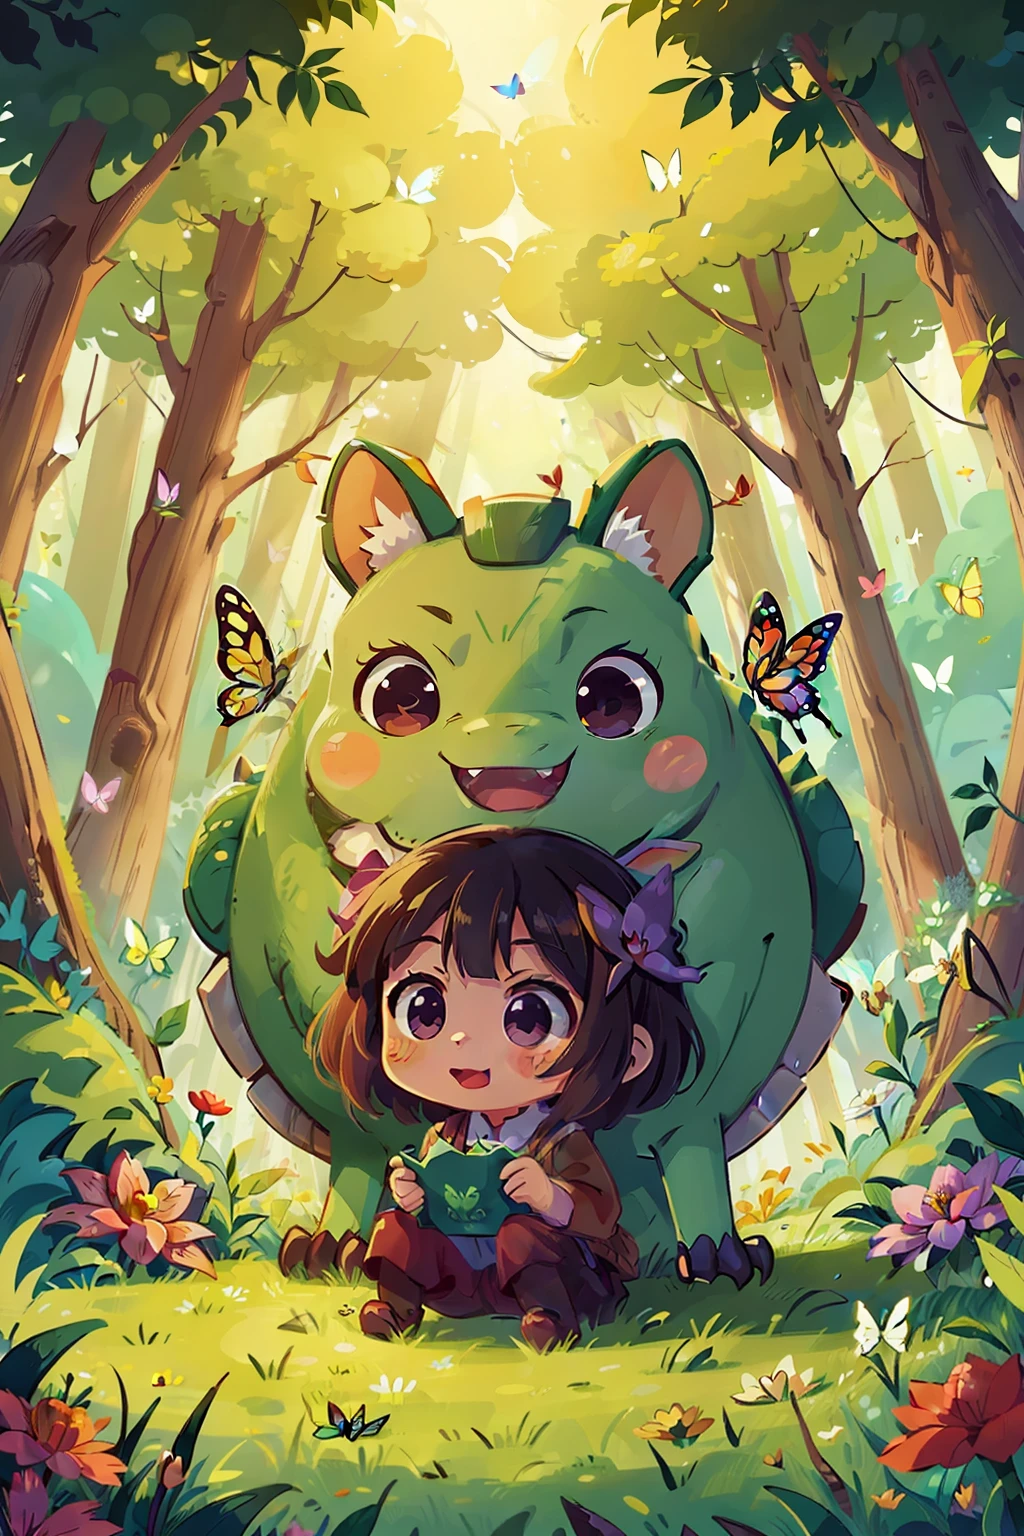  Reiko , felicidade , inspiração em animes: A 5,Dragão herbívoro de 000 anos está sendo injustamente mau, floresta , flor , borboleta colorida alegria, atmosfera romântica, luzes quentes.